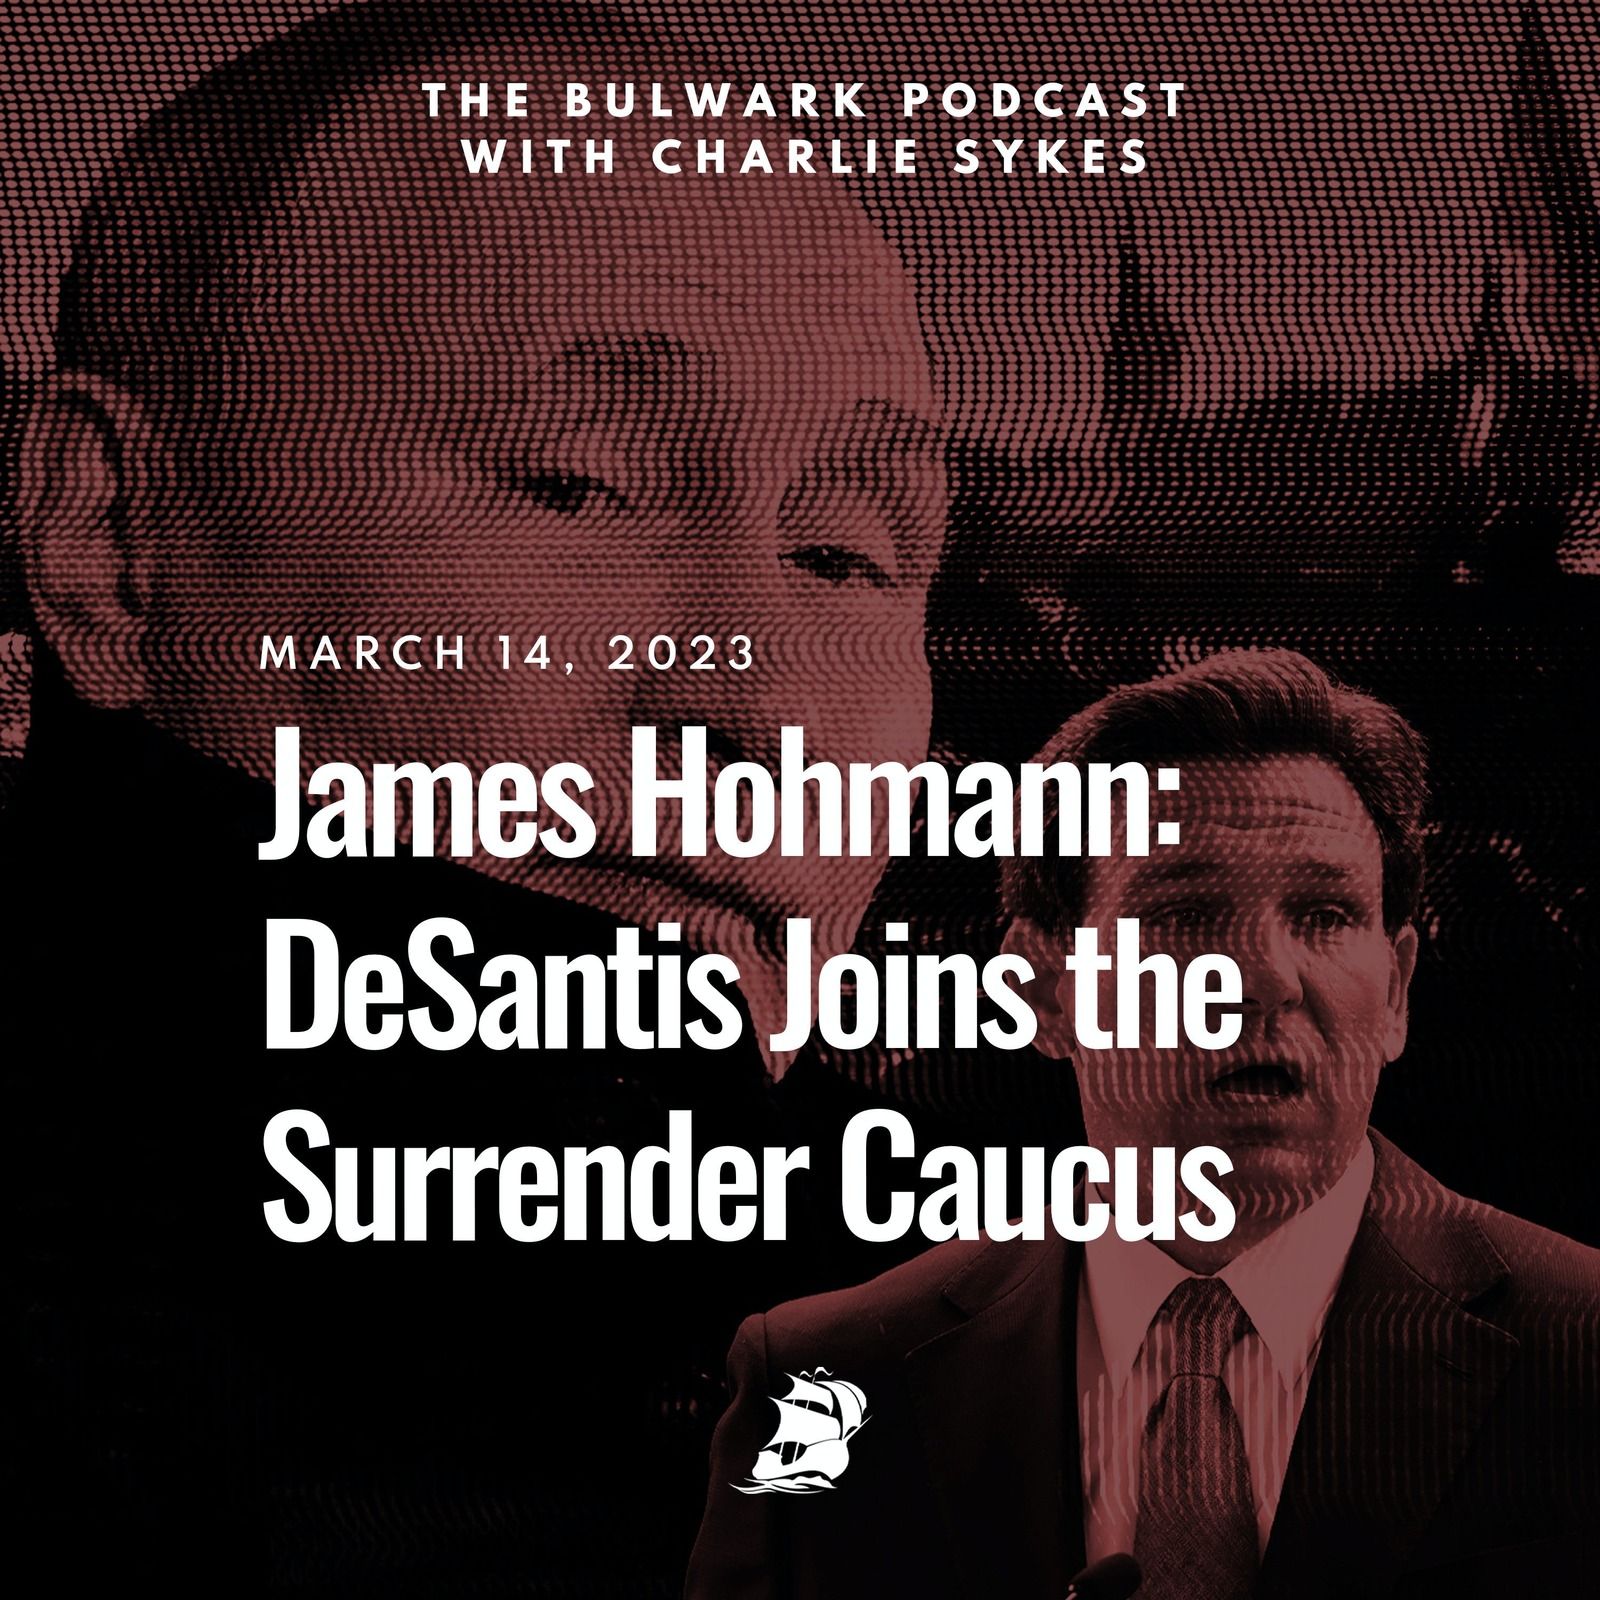 James Hohmann: DeSantis Joins the Surrender Caucus